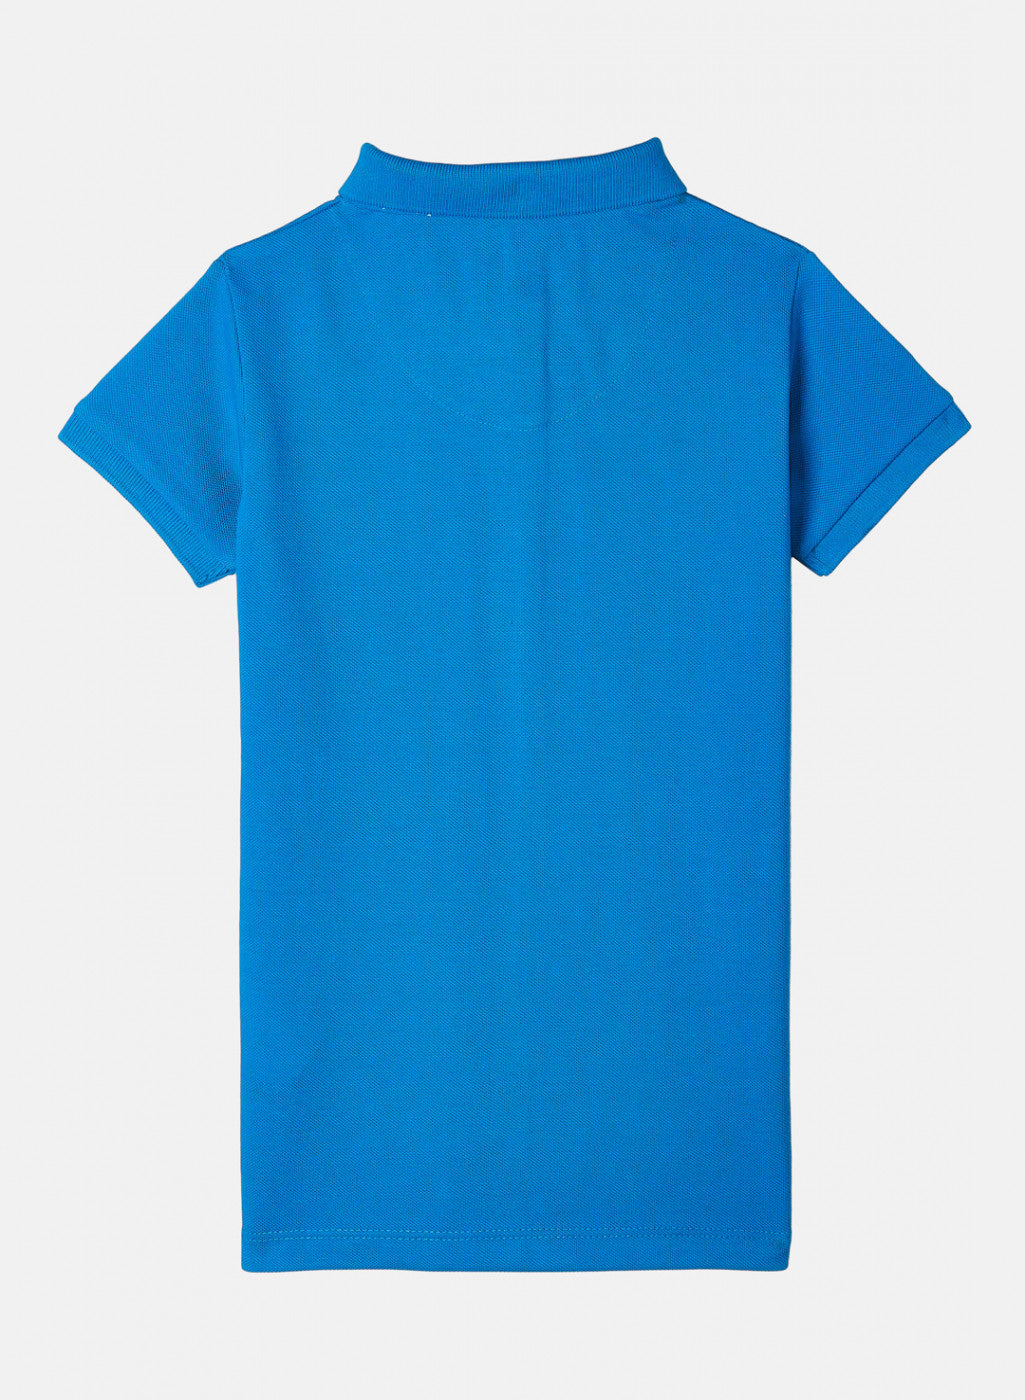 Girls Blue Plain T-Shirt